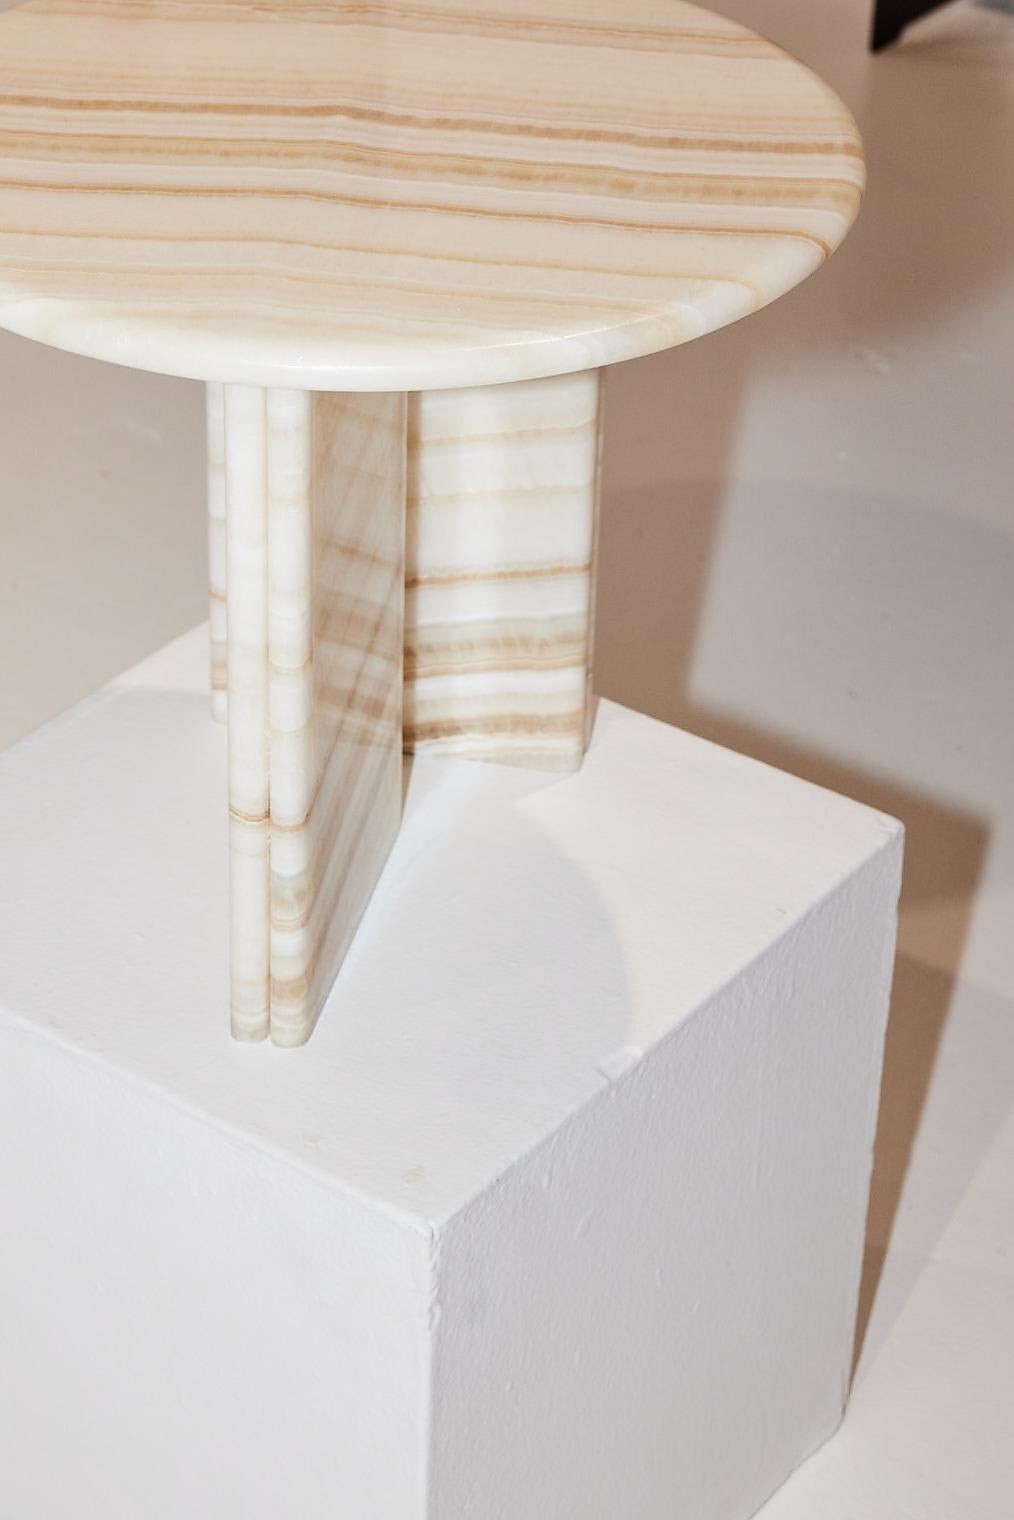 Table d'appoint Onda en Onyx blanc conçue par Just Adele.

La table d'appoint Onda se caractérise par ses formes douces et ses finitions en pierre audacieuses. Le nom Onda, qui signifie 